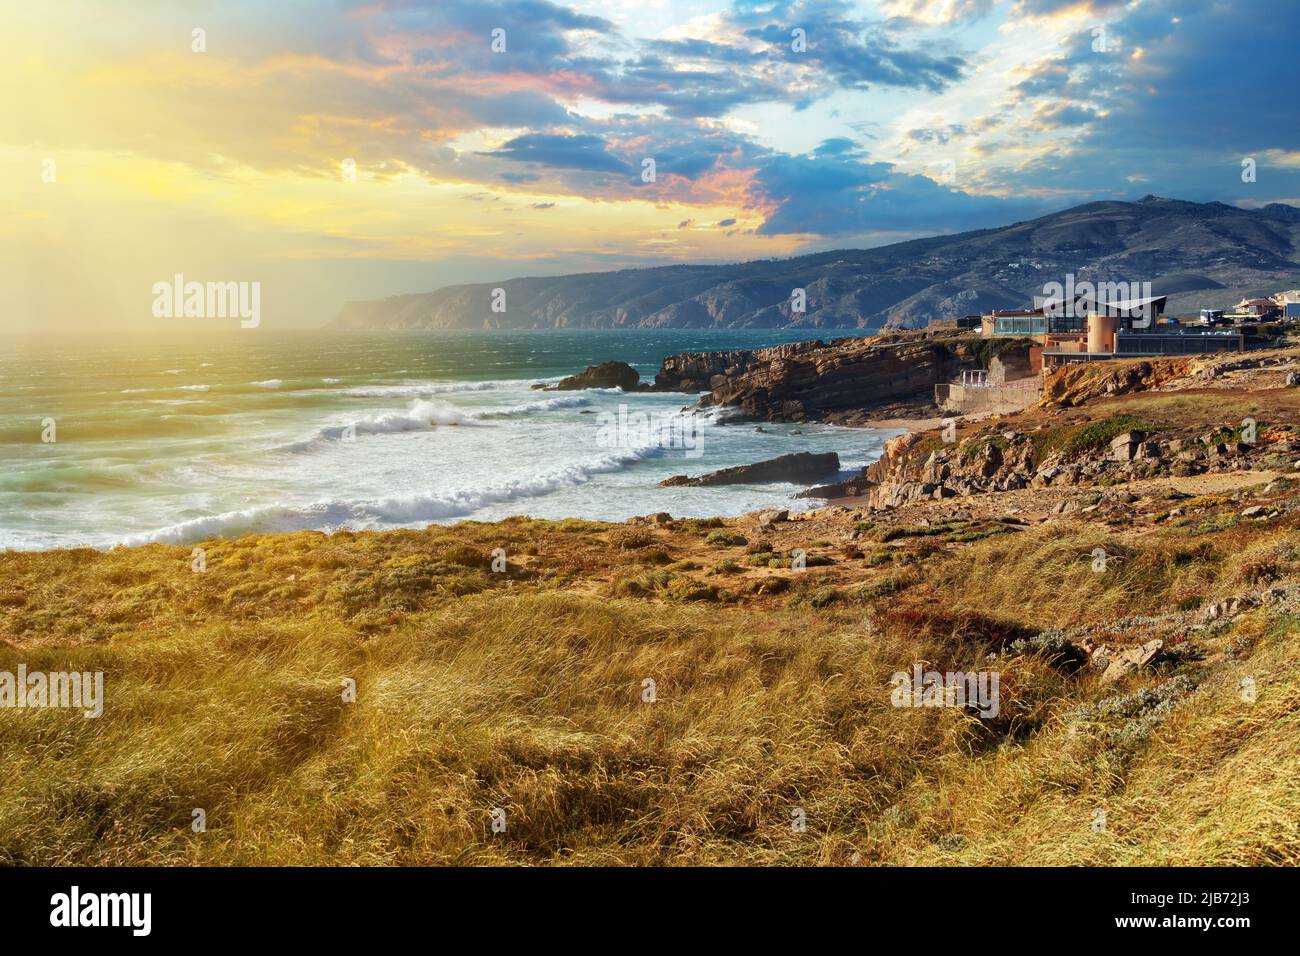 Vista panoramica della costa rocciosa dell'infuriante Oceano Atlantico vicino a Capo Roca alla luce del sole tramontato in Portogallo. Comune di Sintra, Lisbona Foto Stock